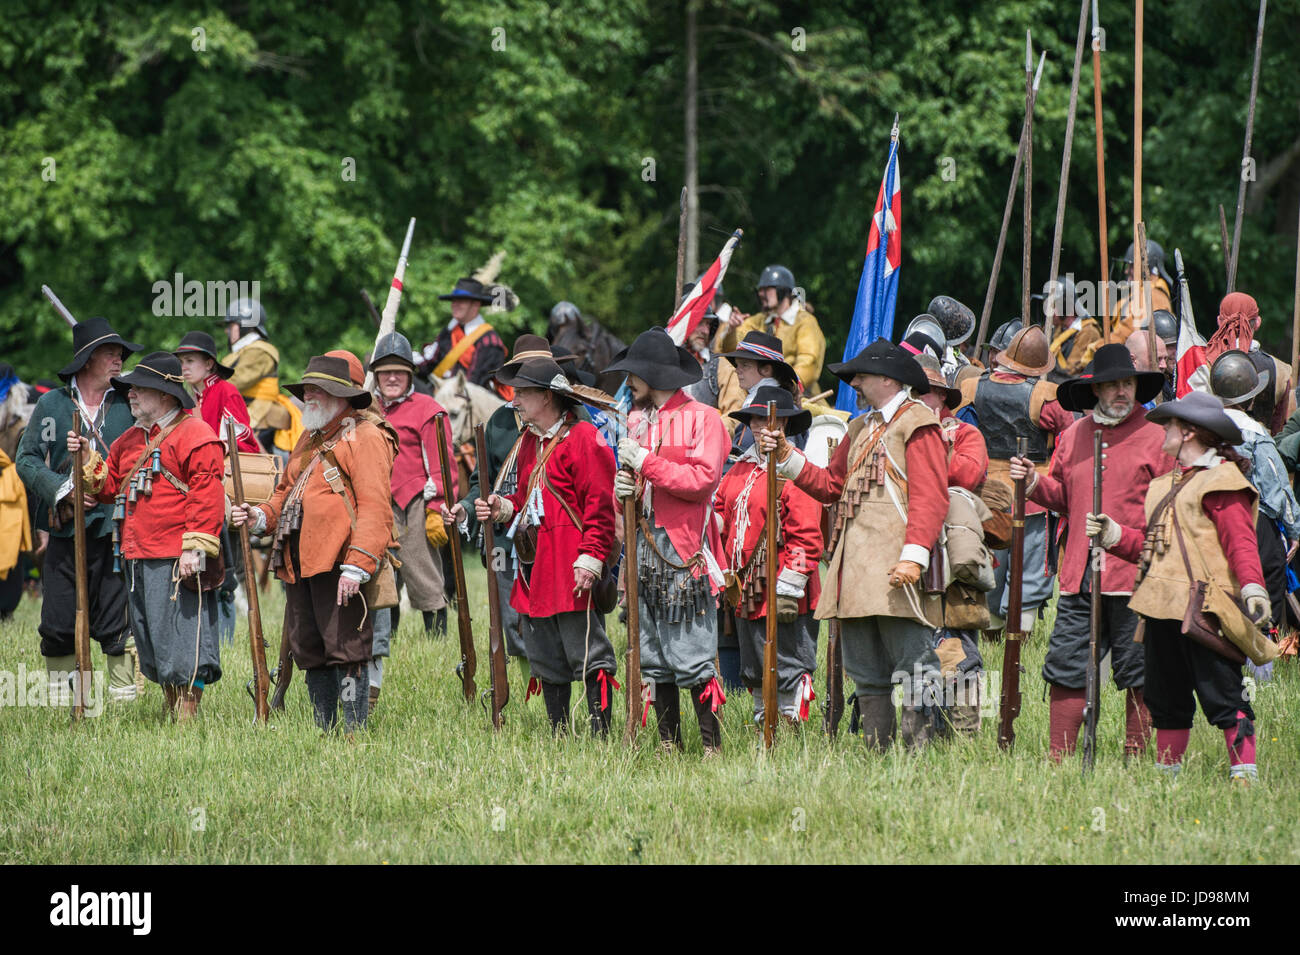 Parlamentarier Musketiere Schlacht bei einem Sealed Knot englischen Civil War Reenactment Event vorbereiten. Charlton Park, Malmesbury, Wiltshire, UK. Stockfoto